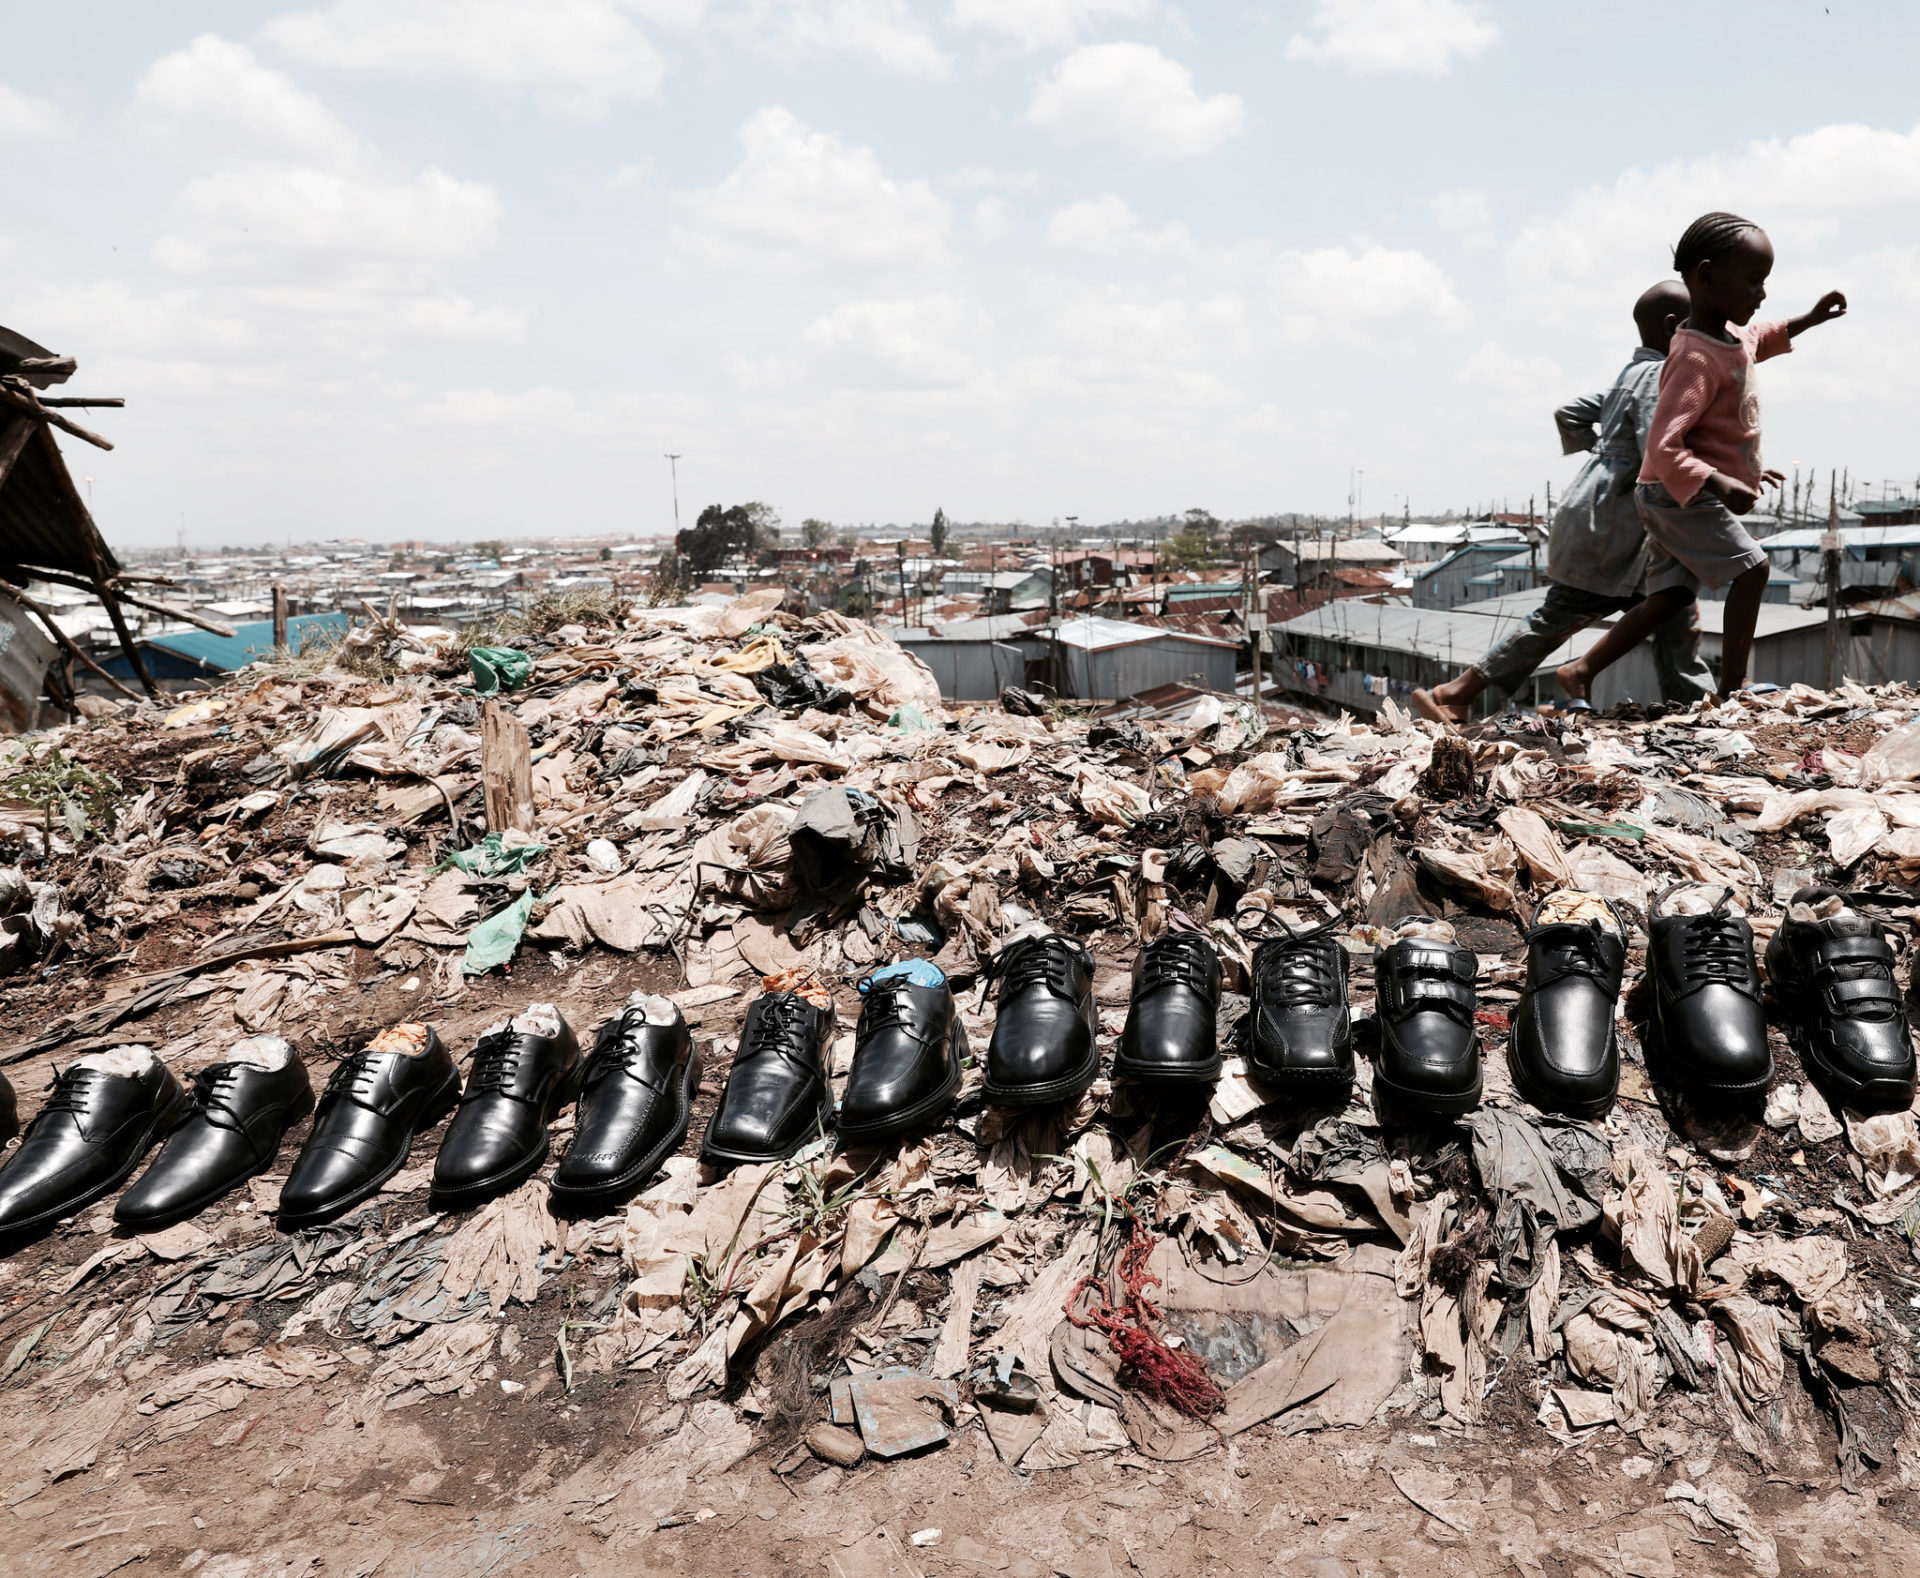 Shoes aligned in Kenya